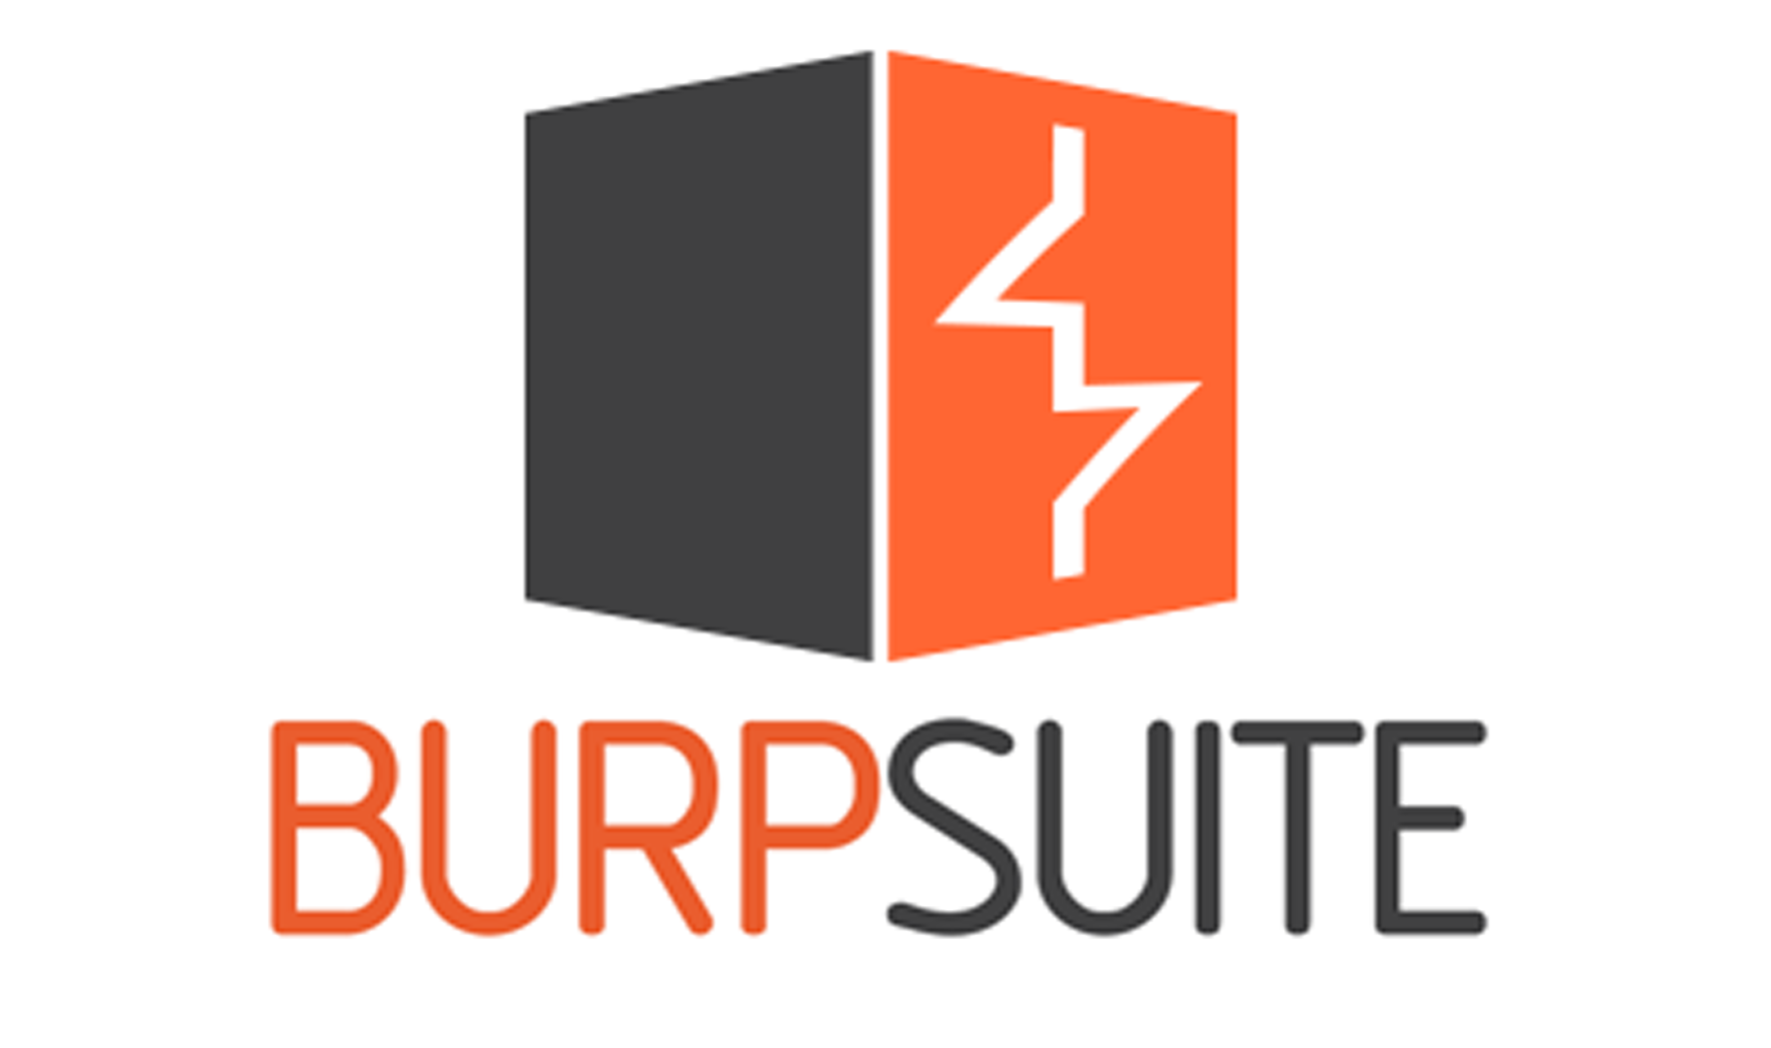 burp suite logo